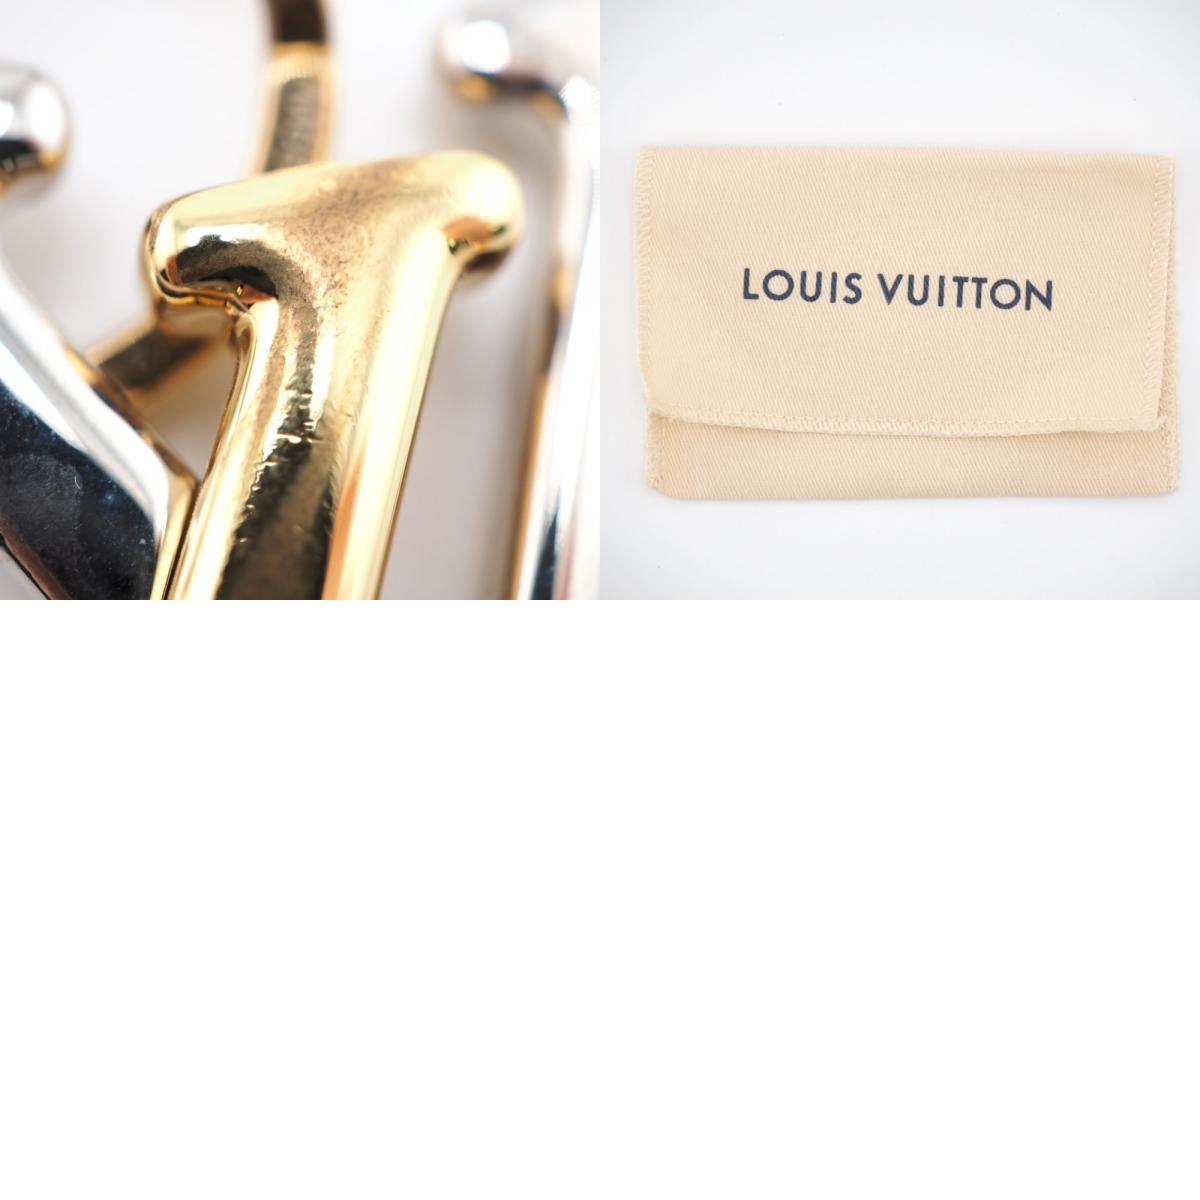 LOUIS VUITTON/ルイヴィトン ビトン M68449 ポルトクレ LVニューウェーブ チャーム ストラップ ゴールド レディース ブランド